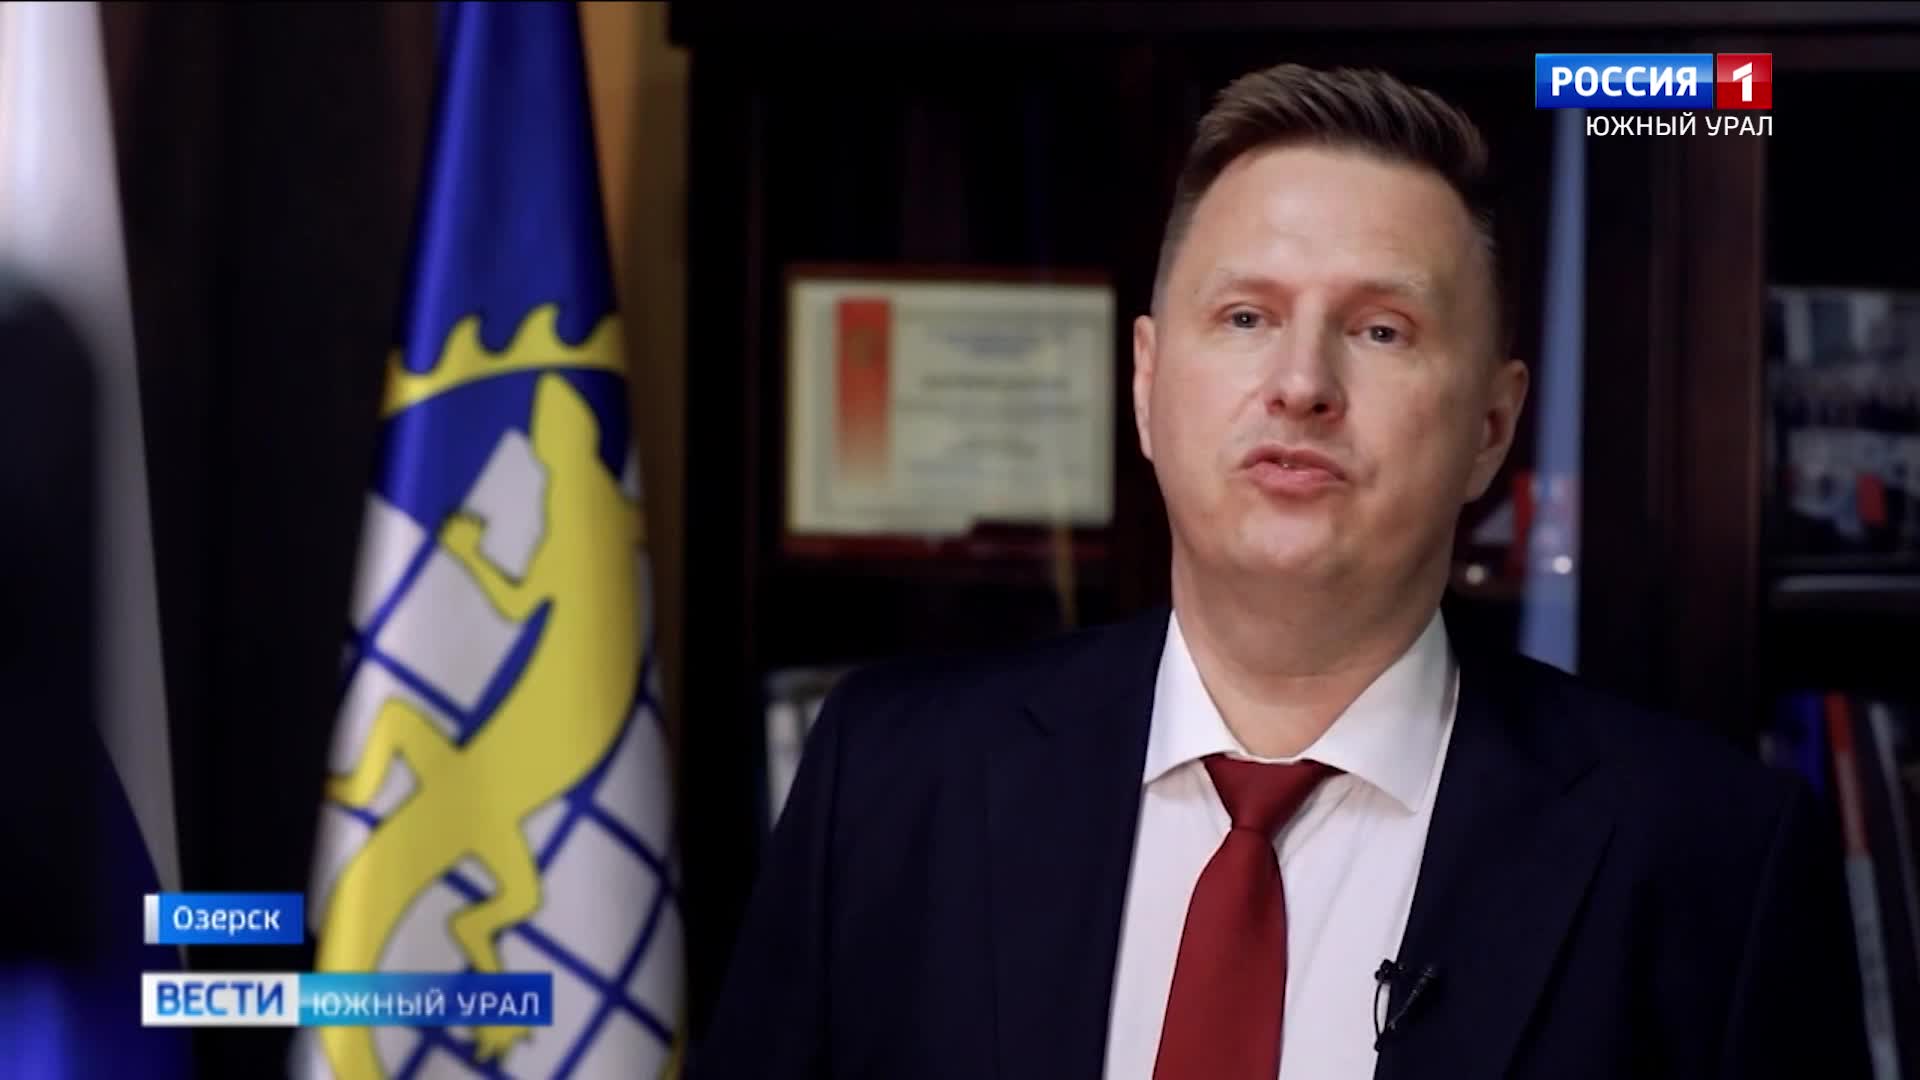 Глава Озерска Евгений Щербаков ушел в отставку